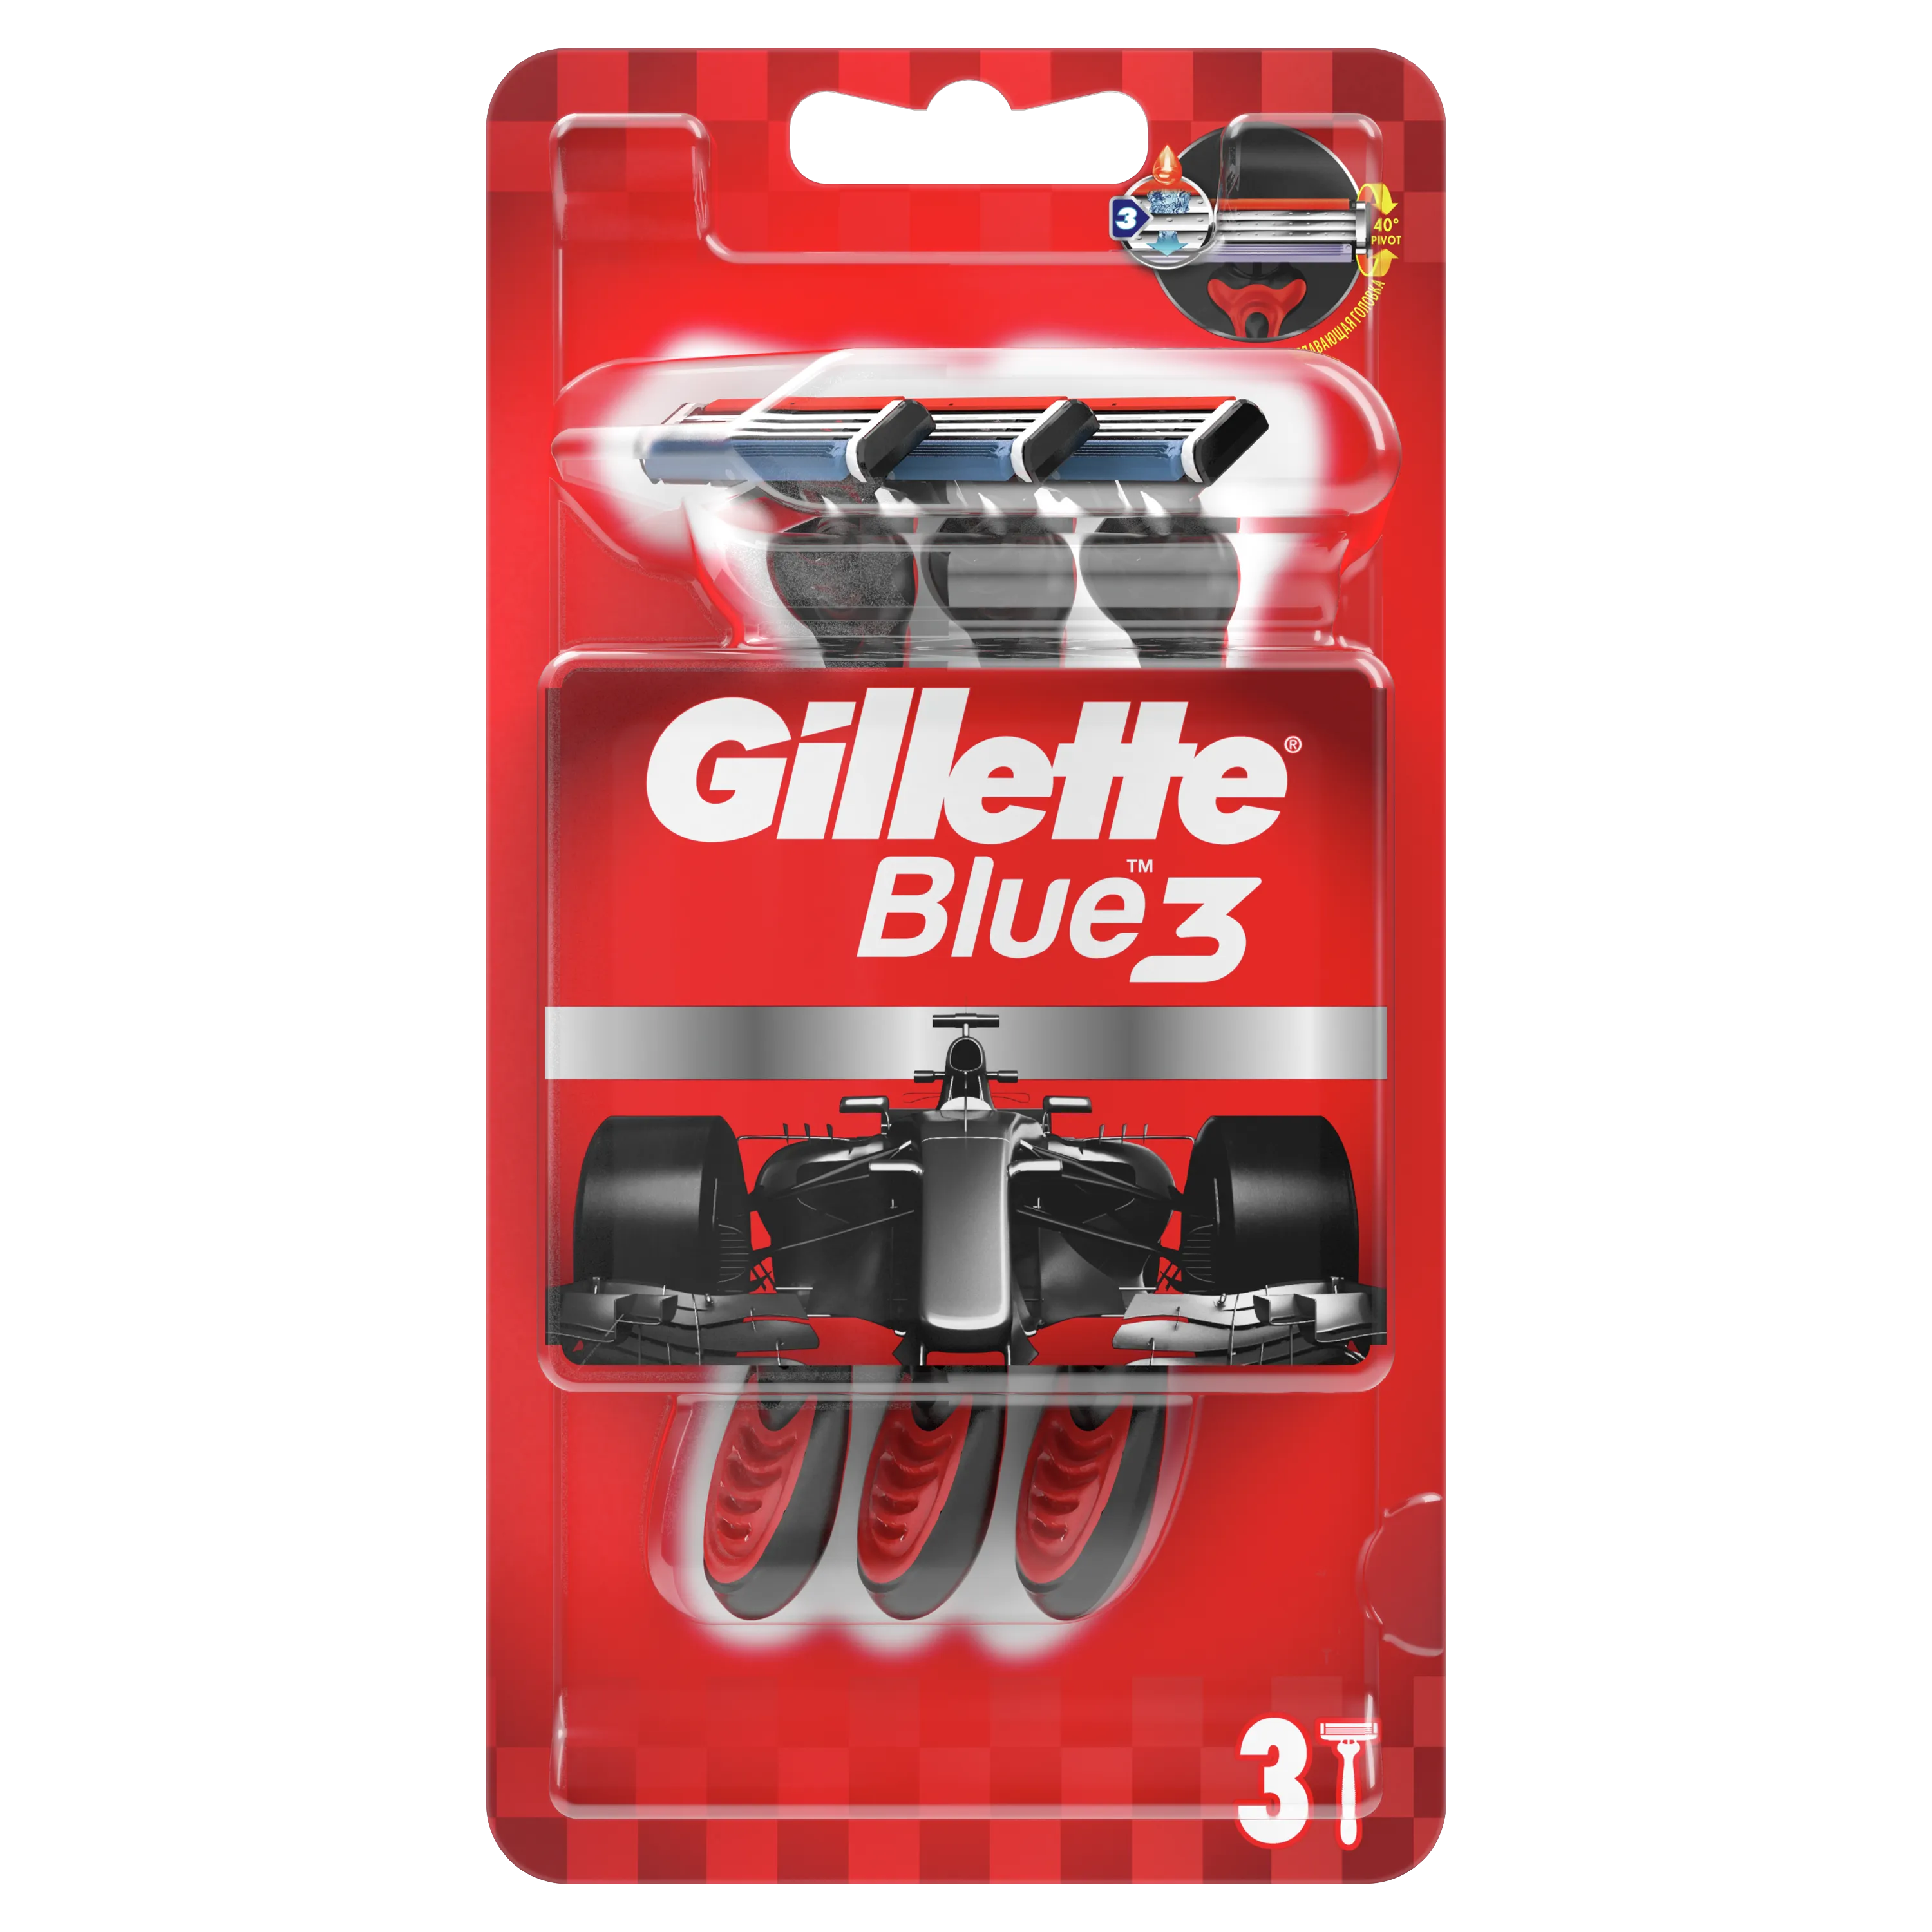 Gillette Blue3 Red Jednorazowa maszynka do golenia dla mężczyzn, 3 szt.